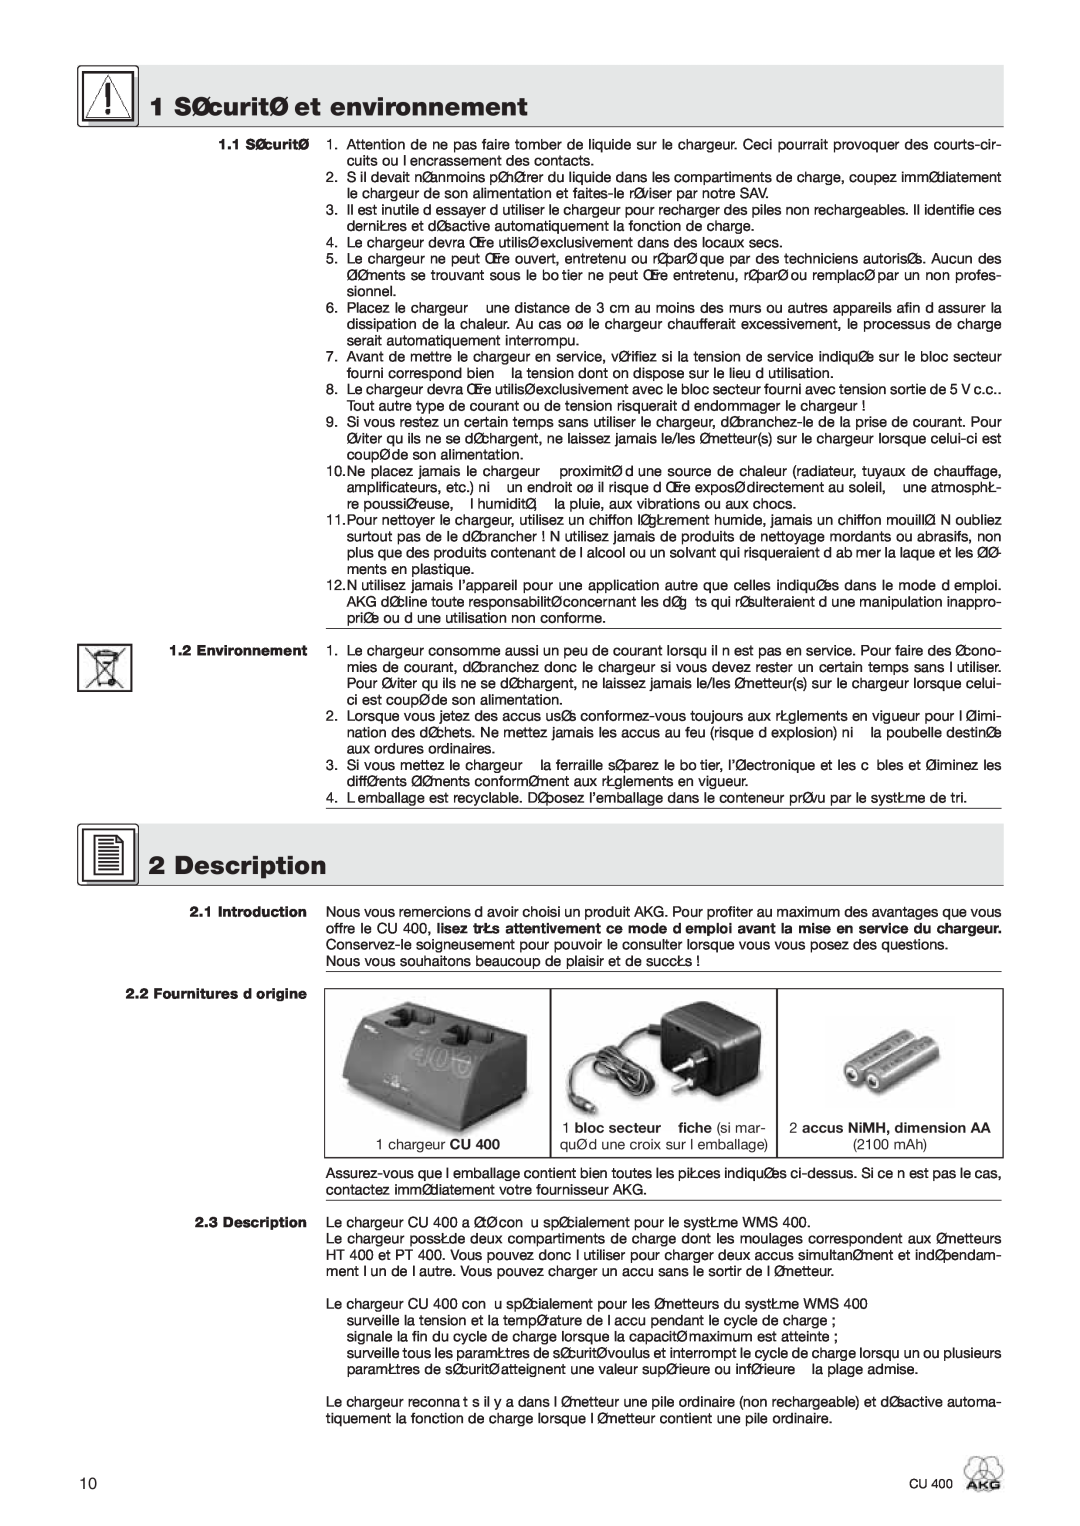 AKG Acoustics CU 400 manual 1 Sécurité et environnement, Description, 2.1Introduction 2.2Fournitures d’origine 